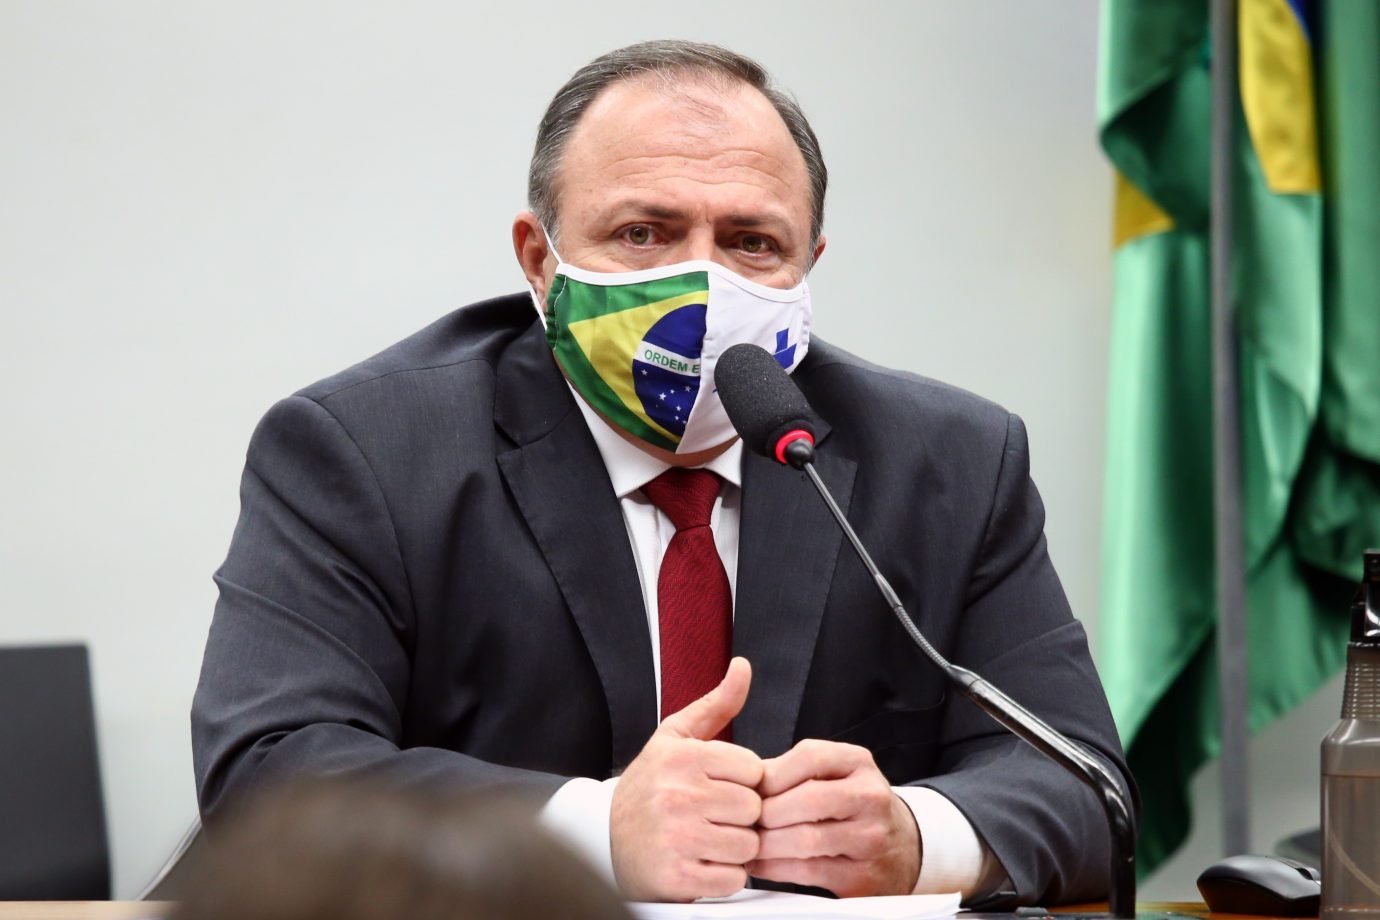 Ministro interino da Saúde, Eduardo Pazuelo, esclarece na Câmara dos Deputados apagão de dados da covid-19